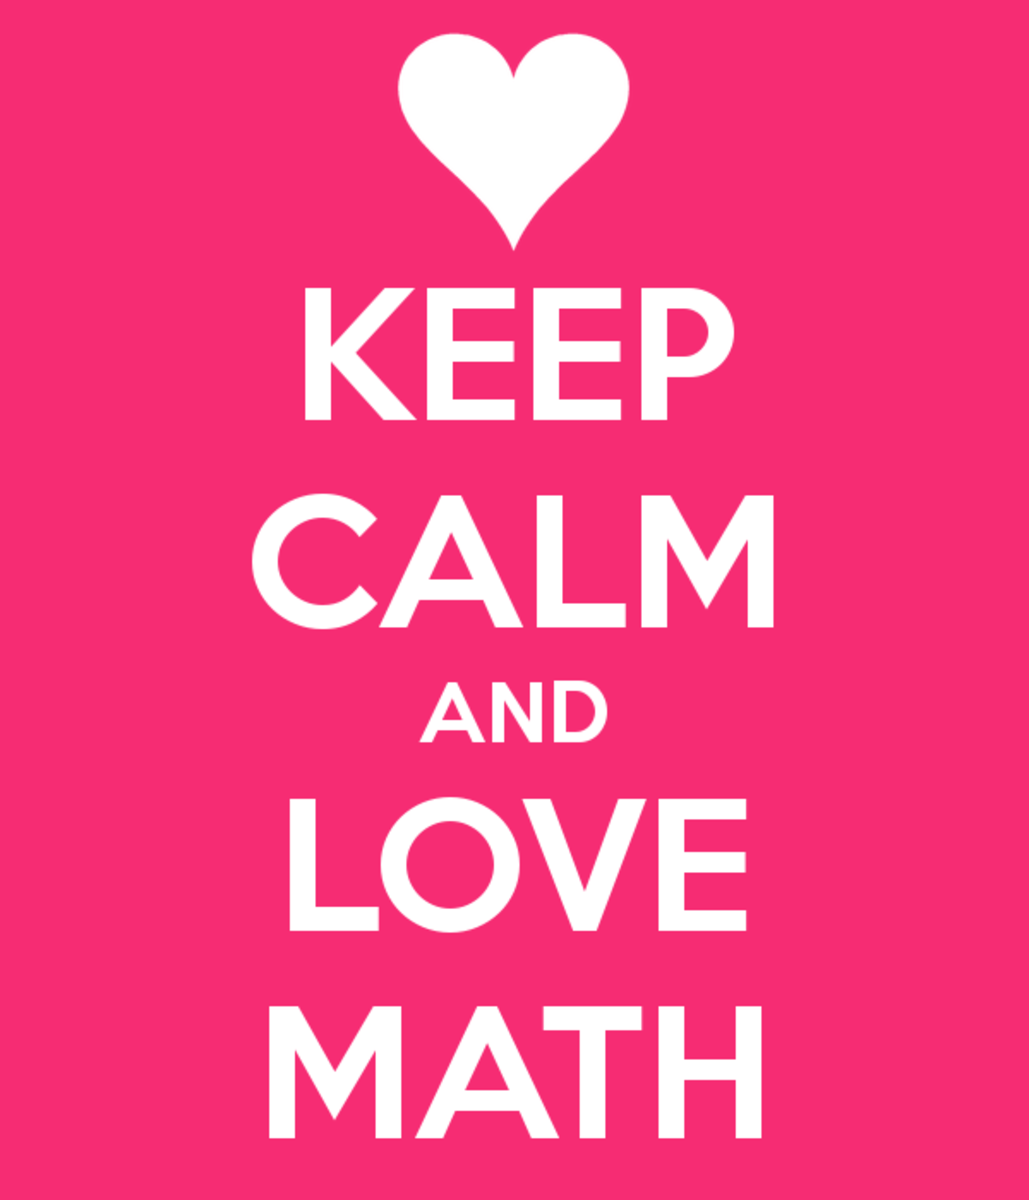 Keep calm and love math!